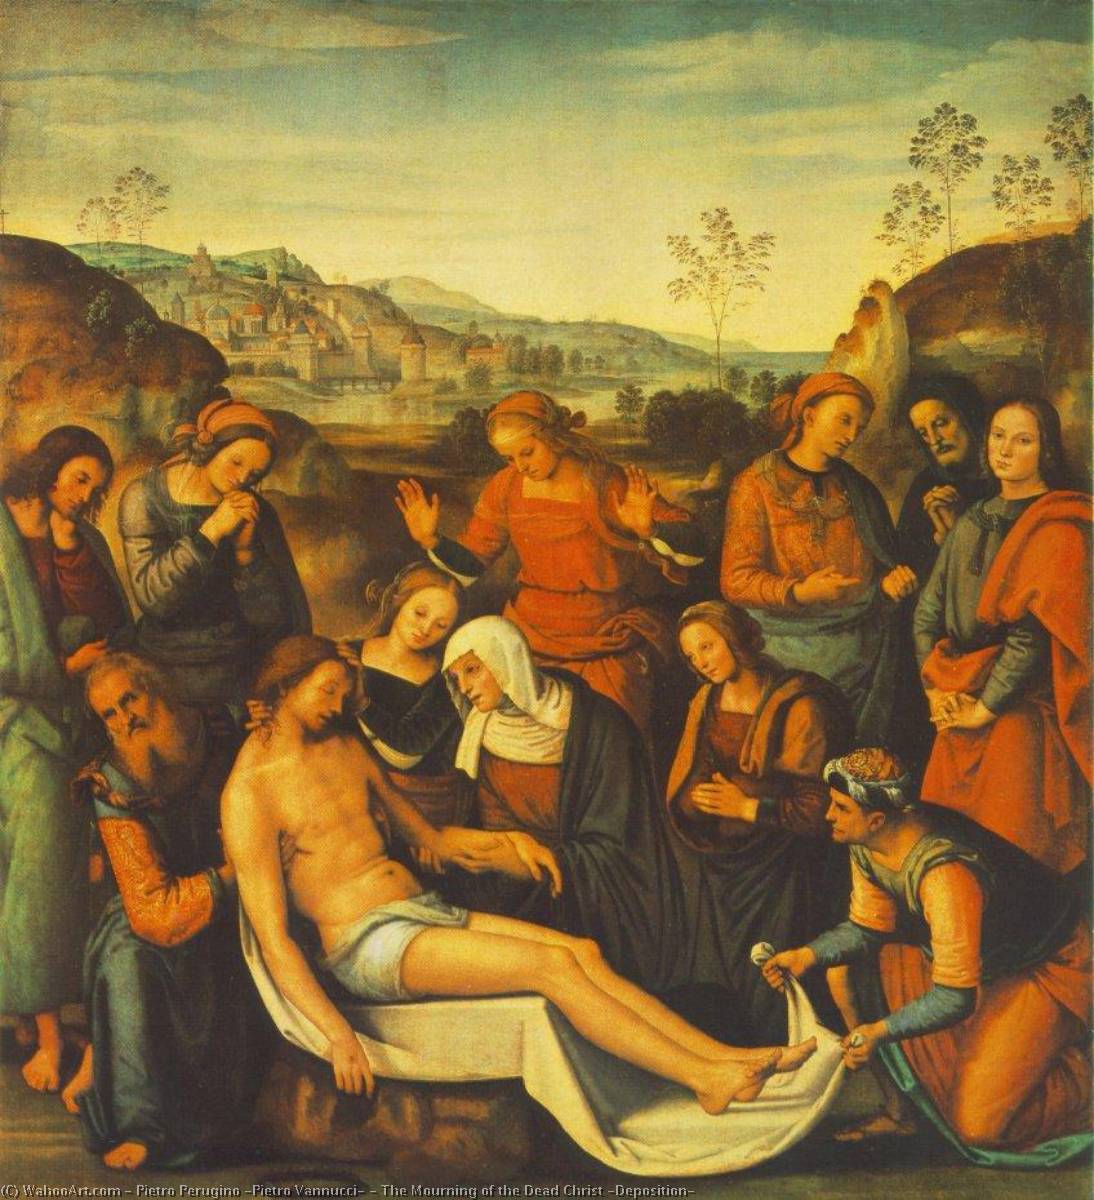 Kauf Museum Kunstreproduktionen Die Trauer des Toten Christus (Bestellung), 1495 von Pietro Perugino (Pietro Vannucci) (1446-1523) | ArtsDot.com